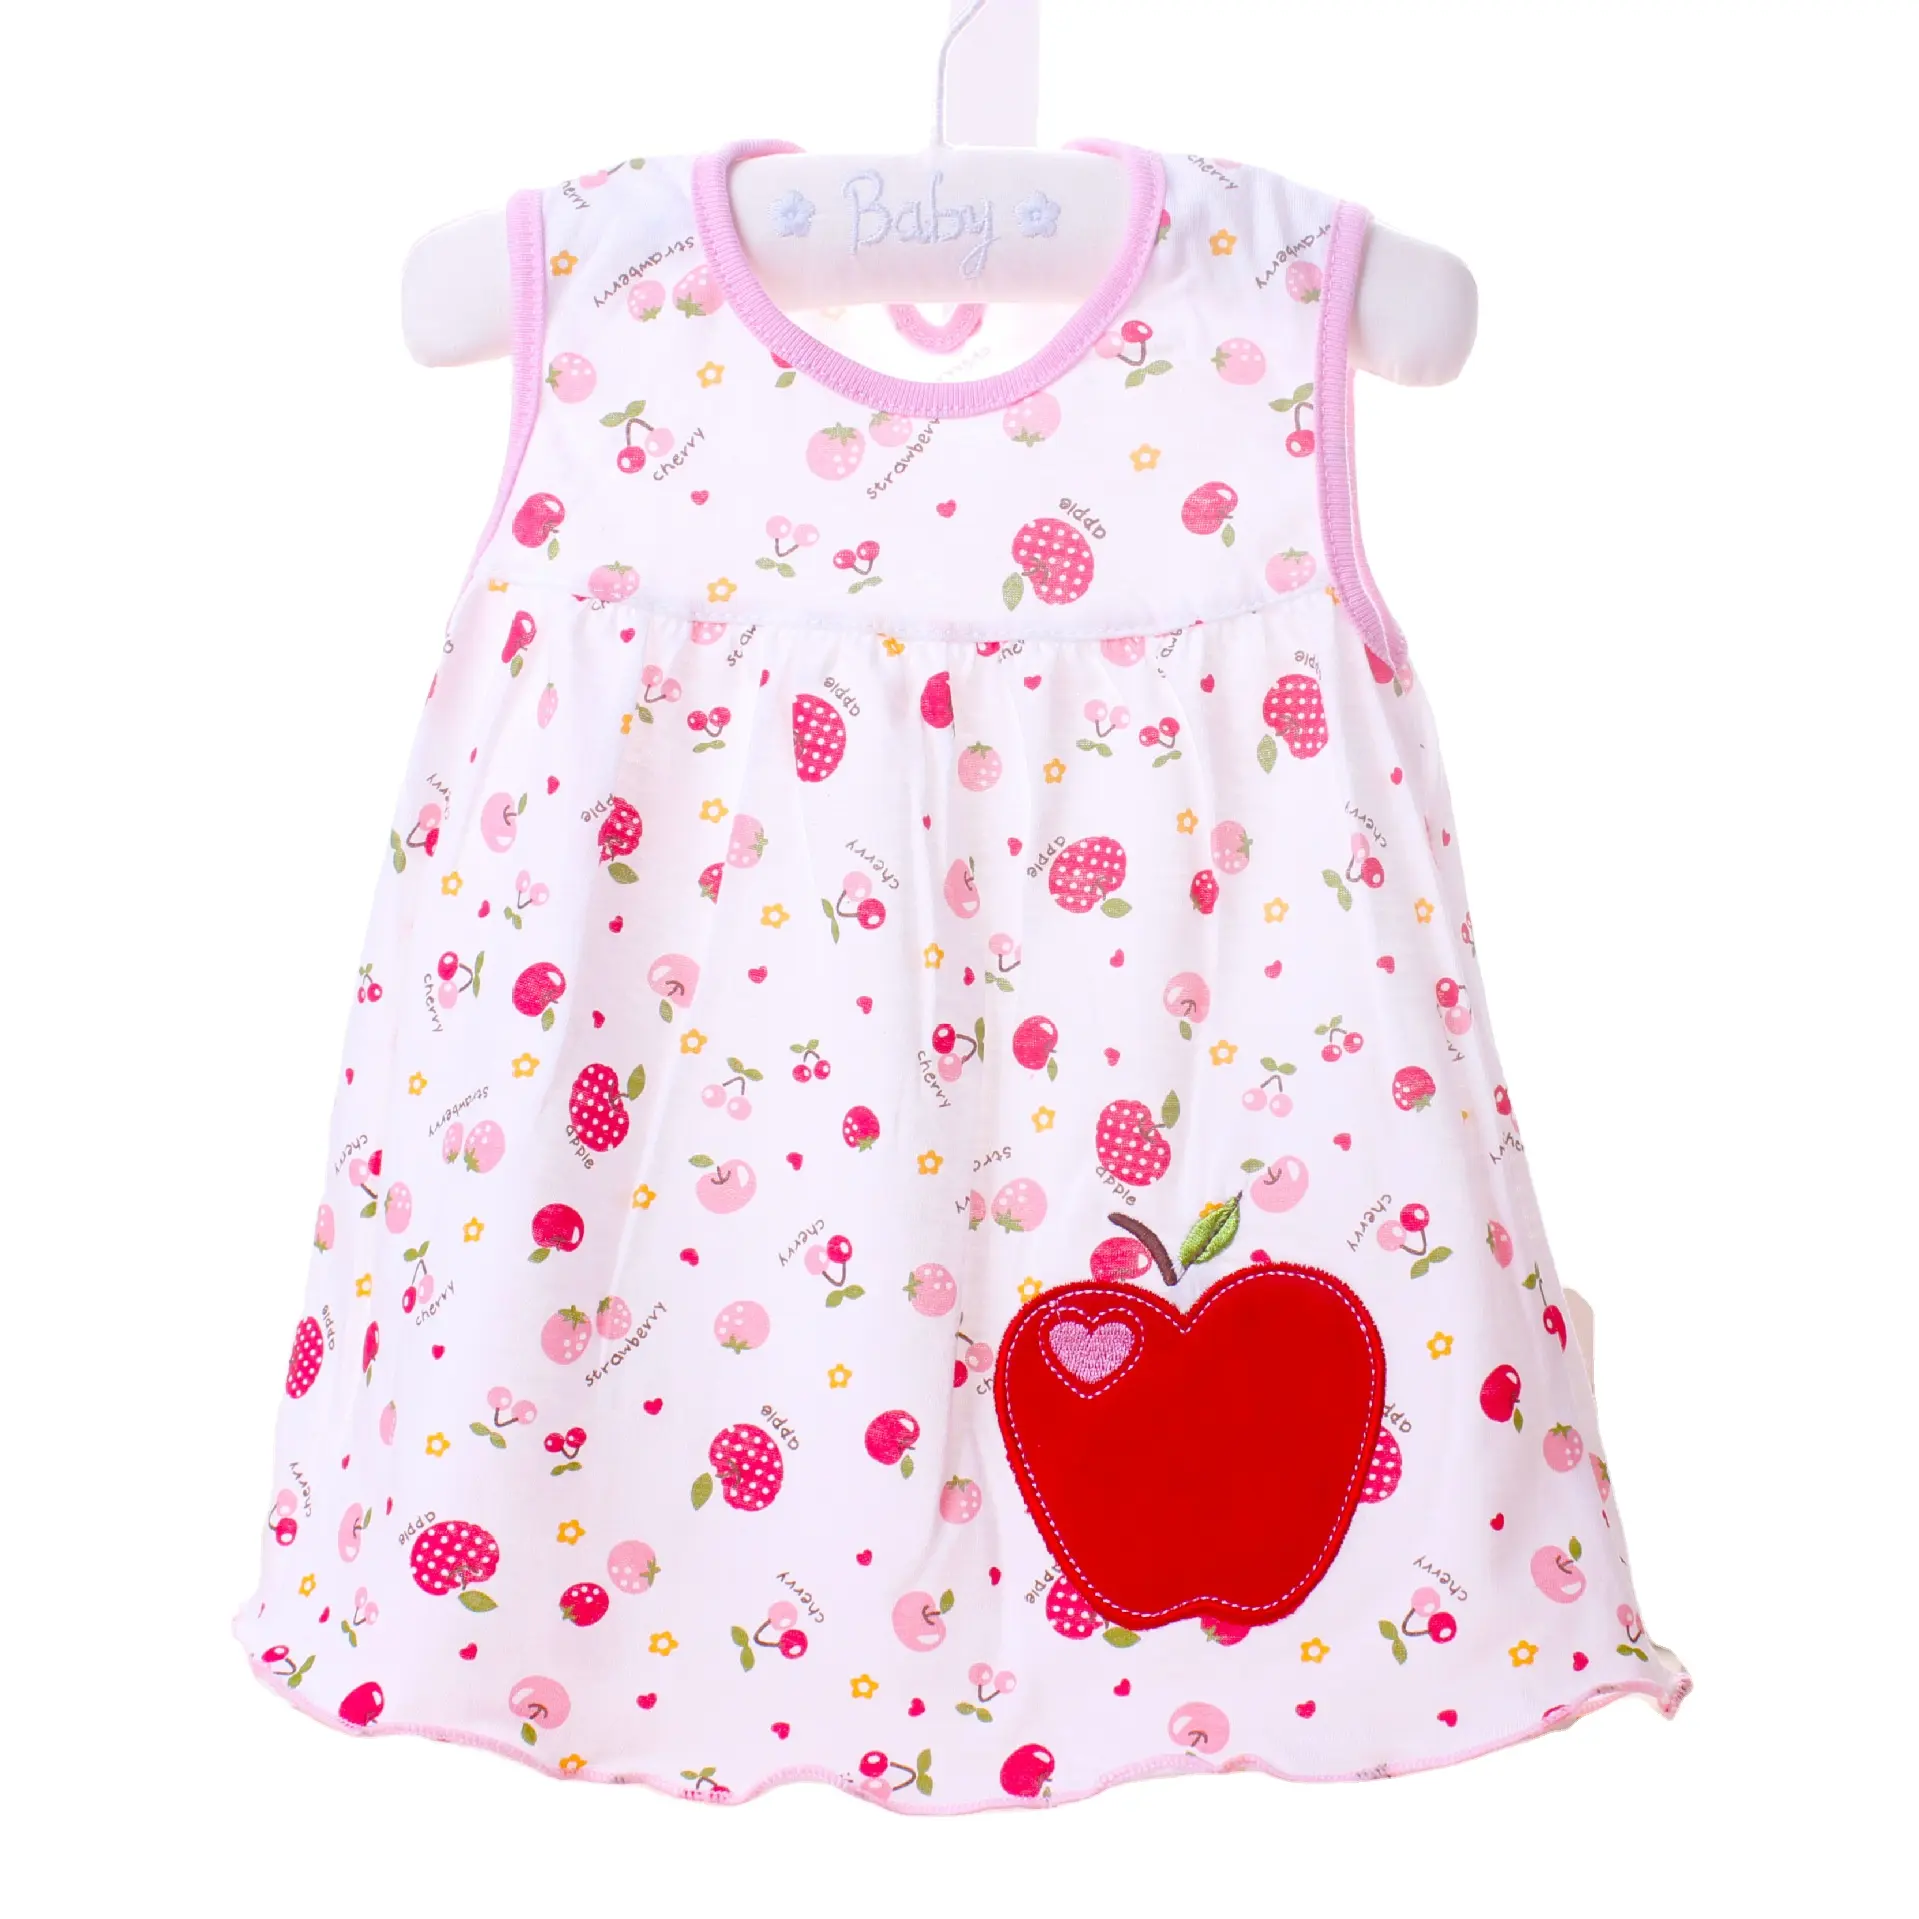 Toptan sıcak satış tasarım yaz sevimli çocuk giyim elbise Casual bebek kız elbise